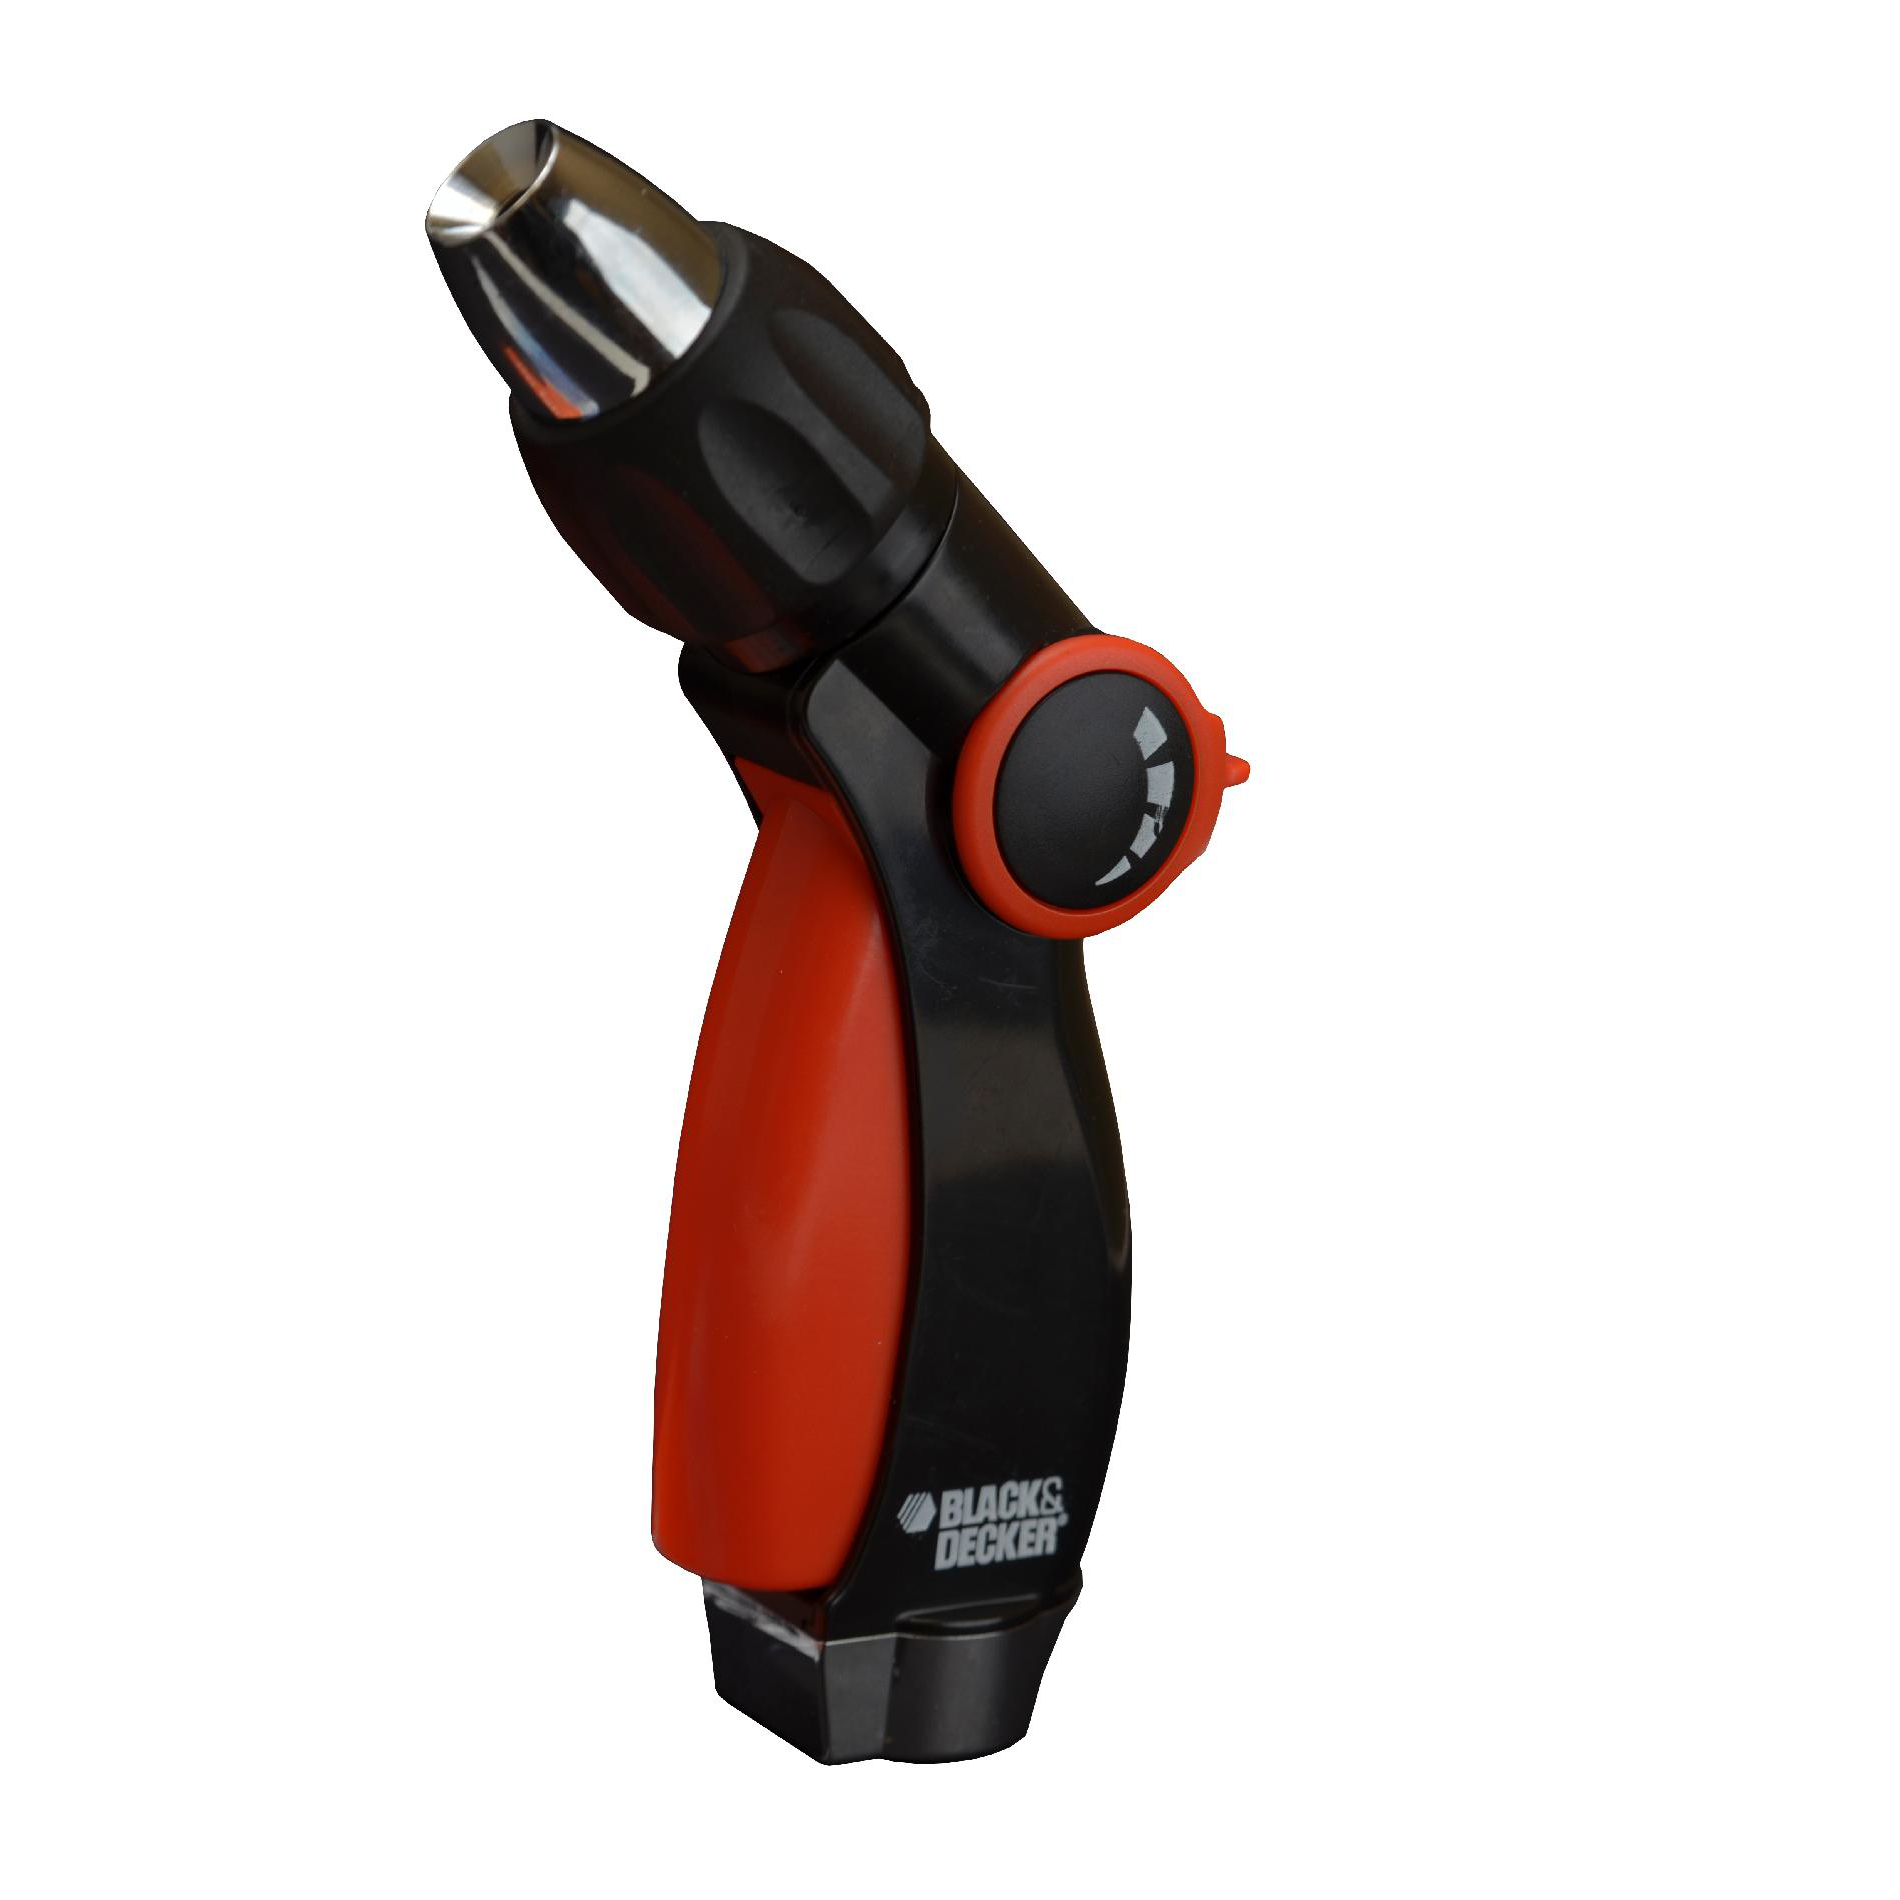 Black & Decker 3-Way Adjustable Trigger Hose Nozzle—$1.99